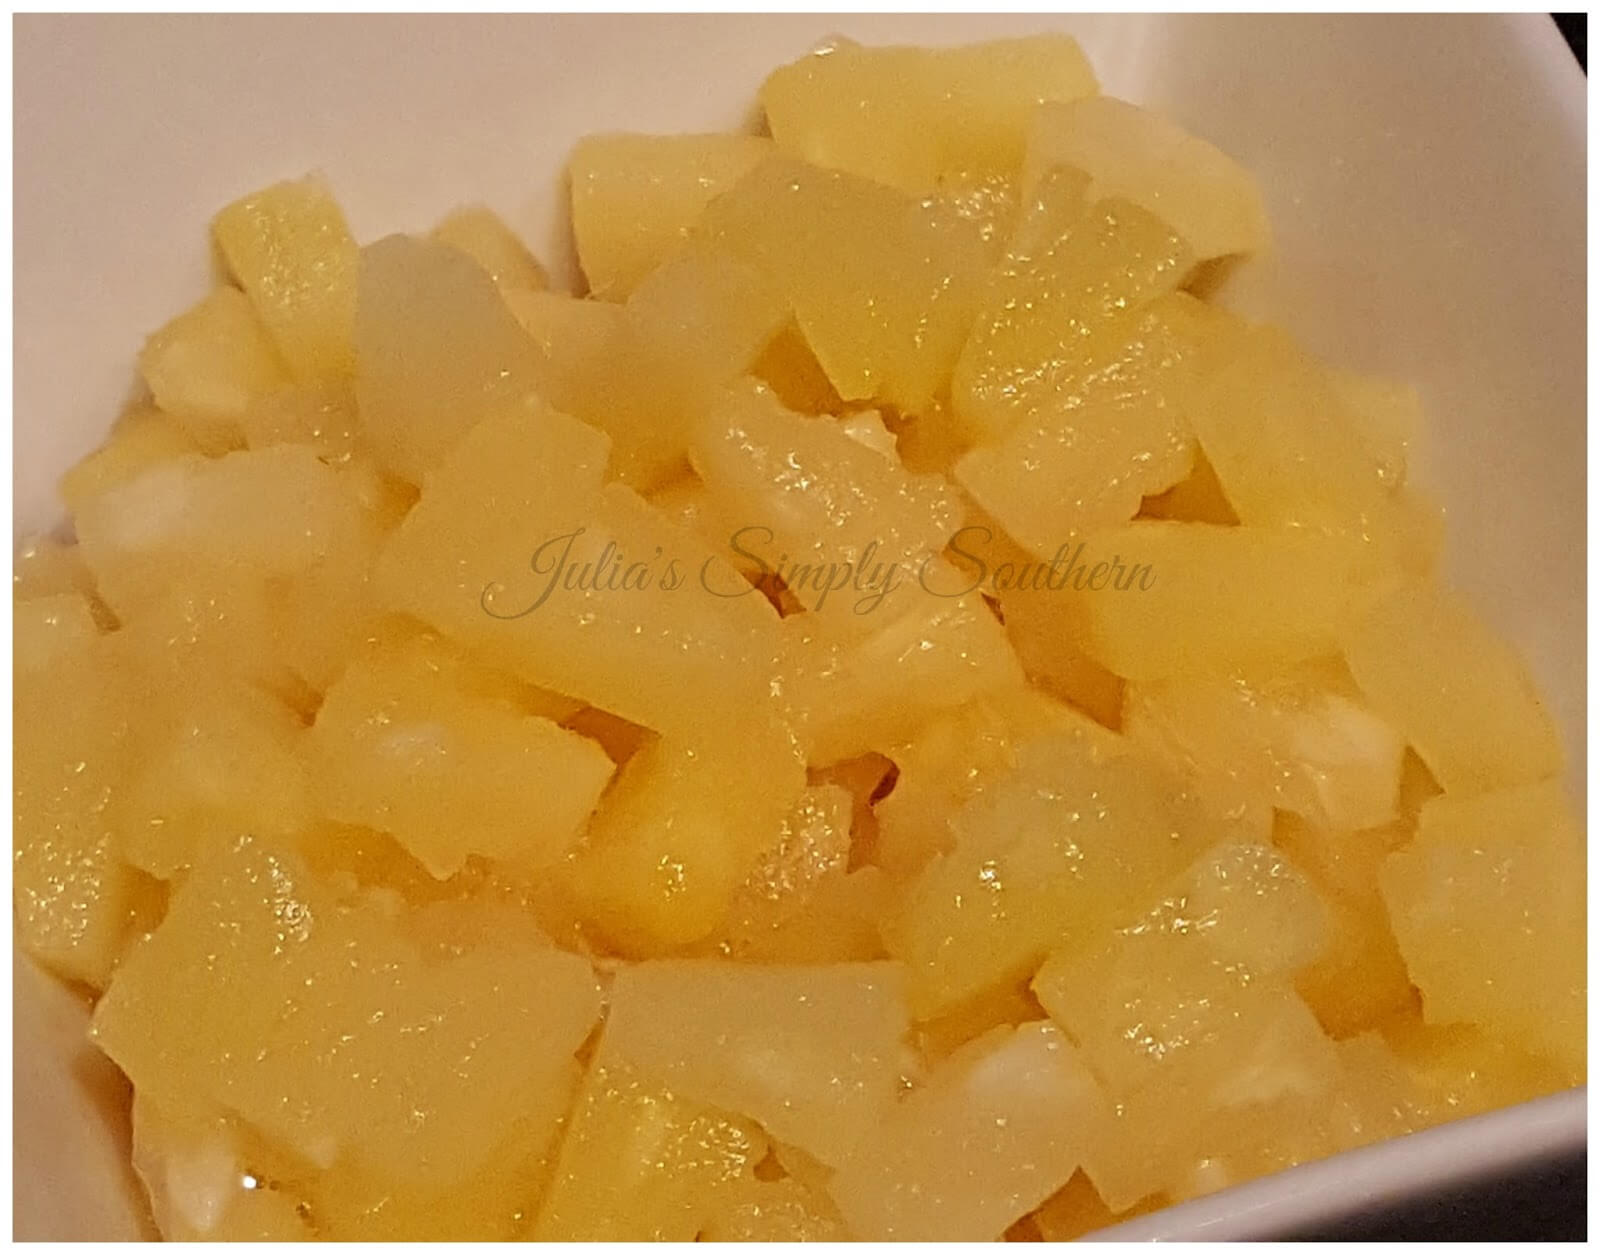 Pineapple tidbits